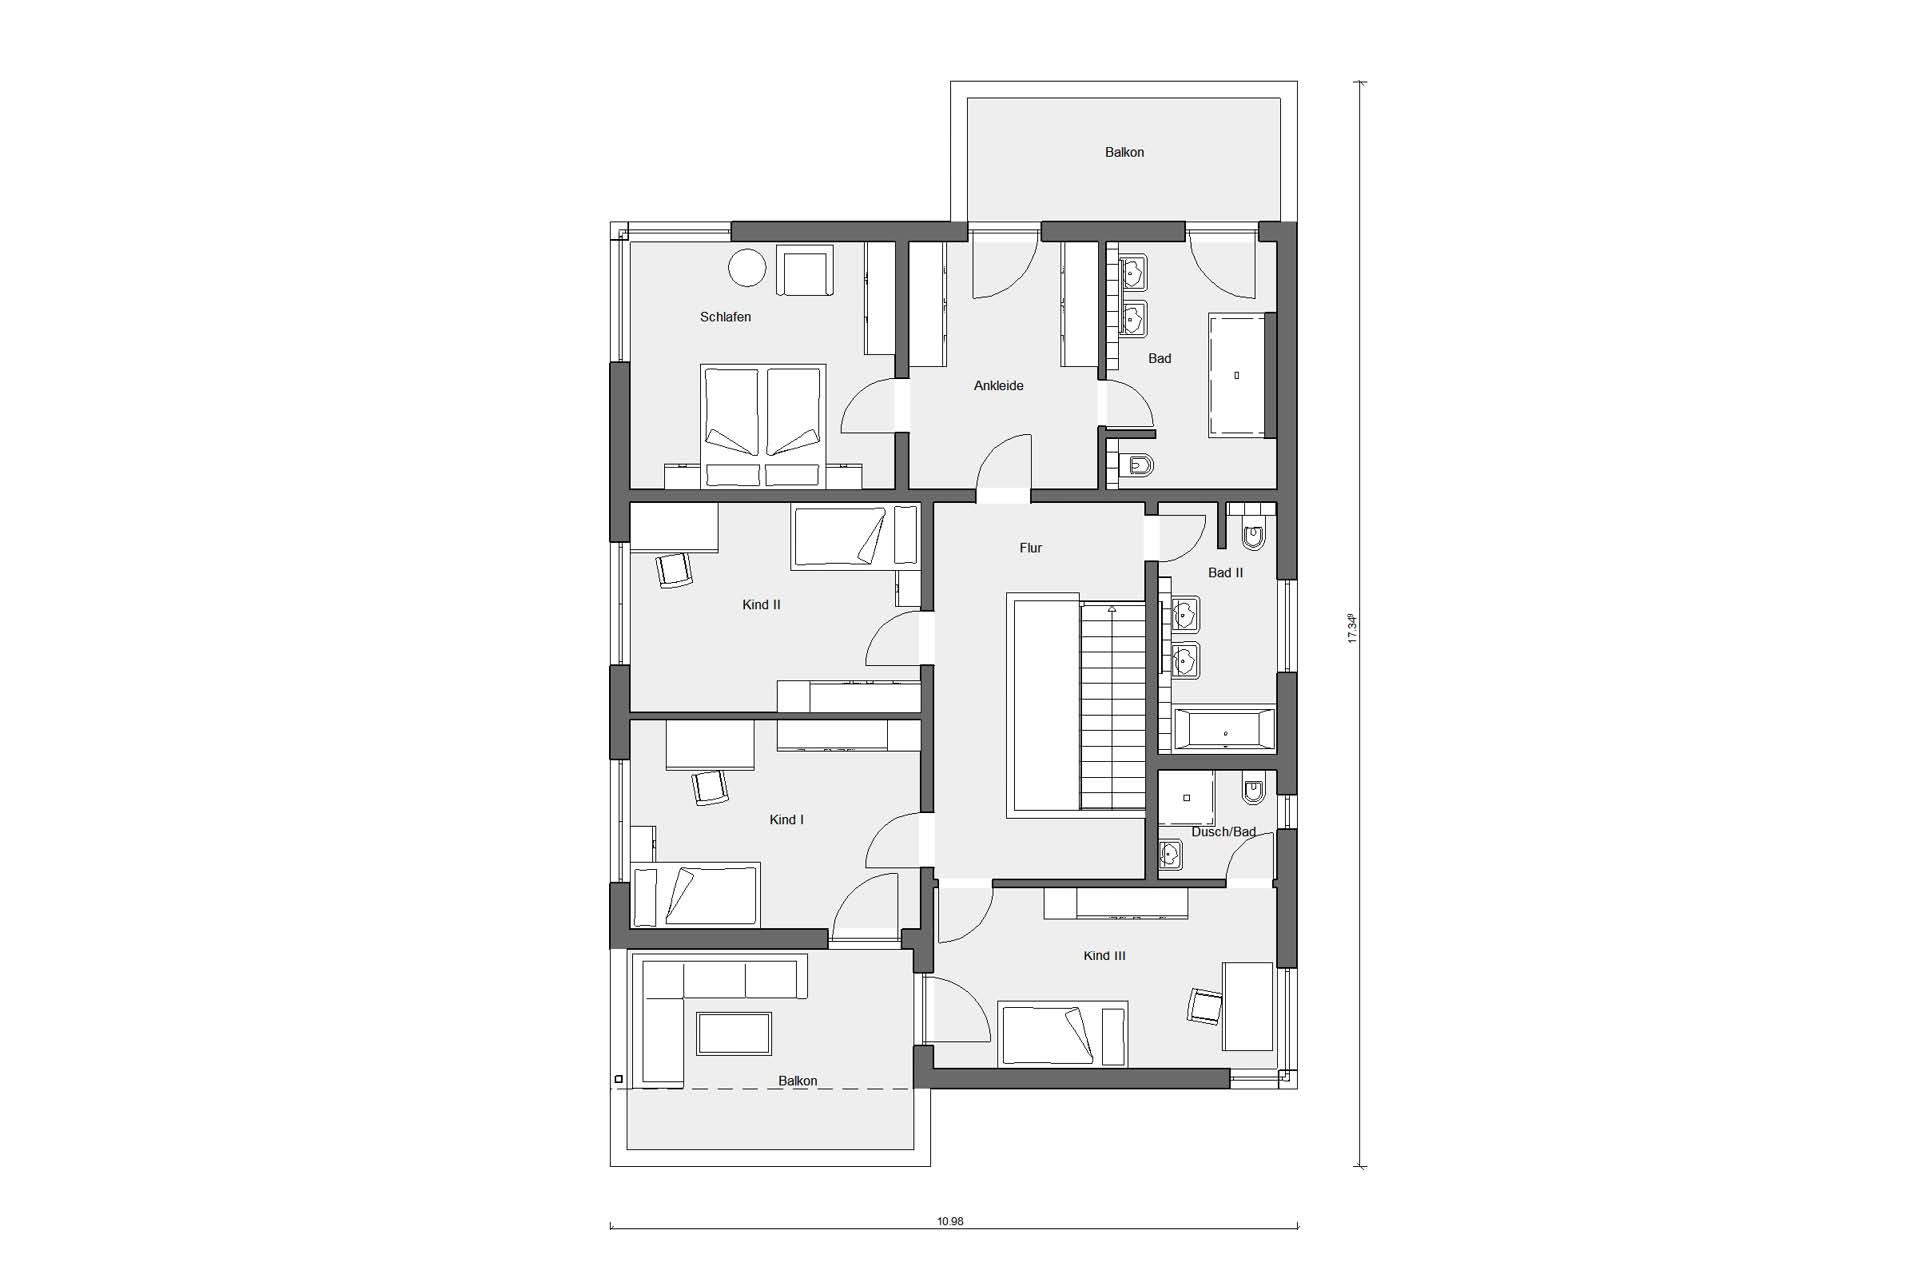 Plano del ático casa de estilo Bauhaus con techo plano E 20-207.1